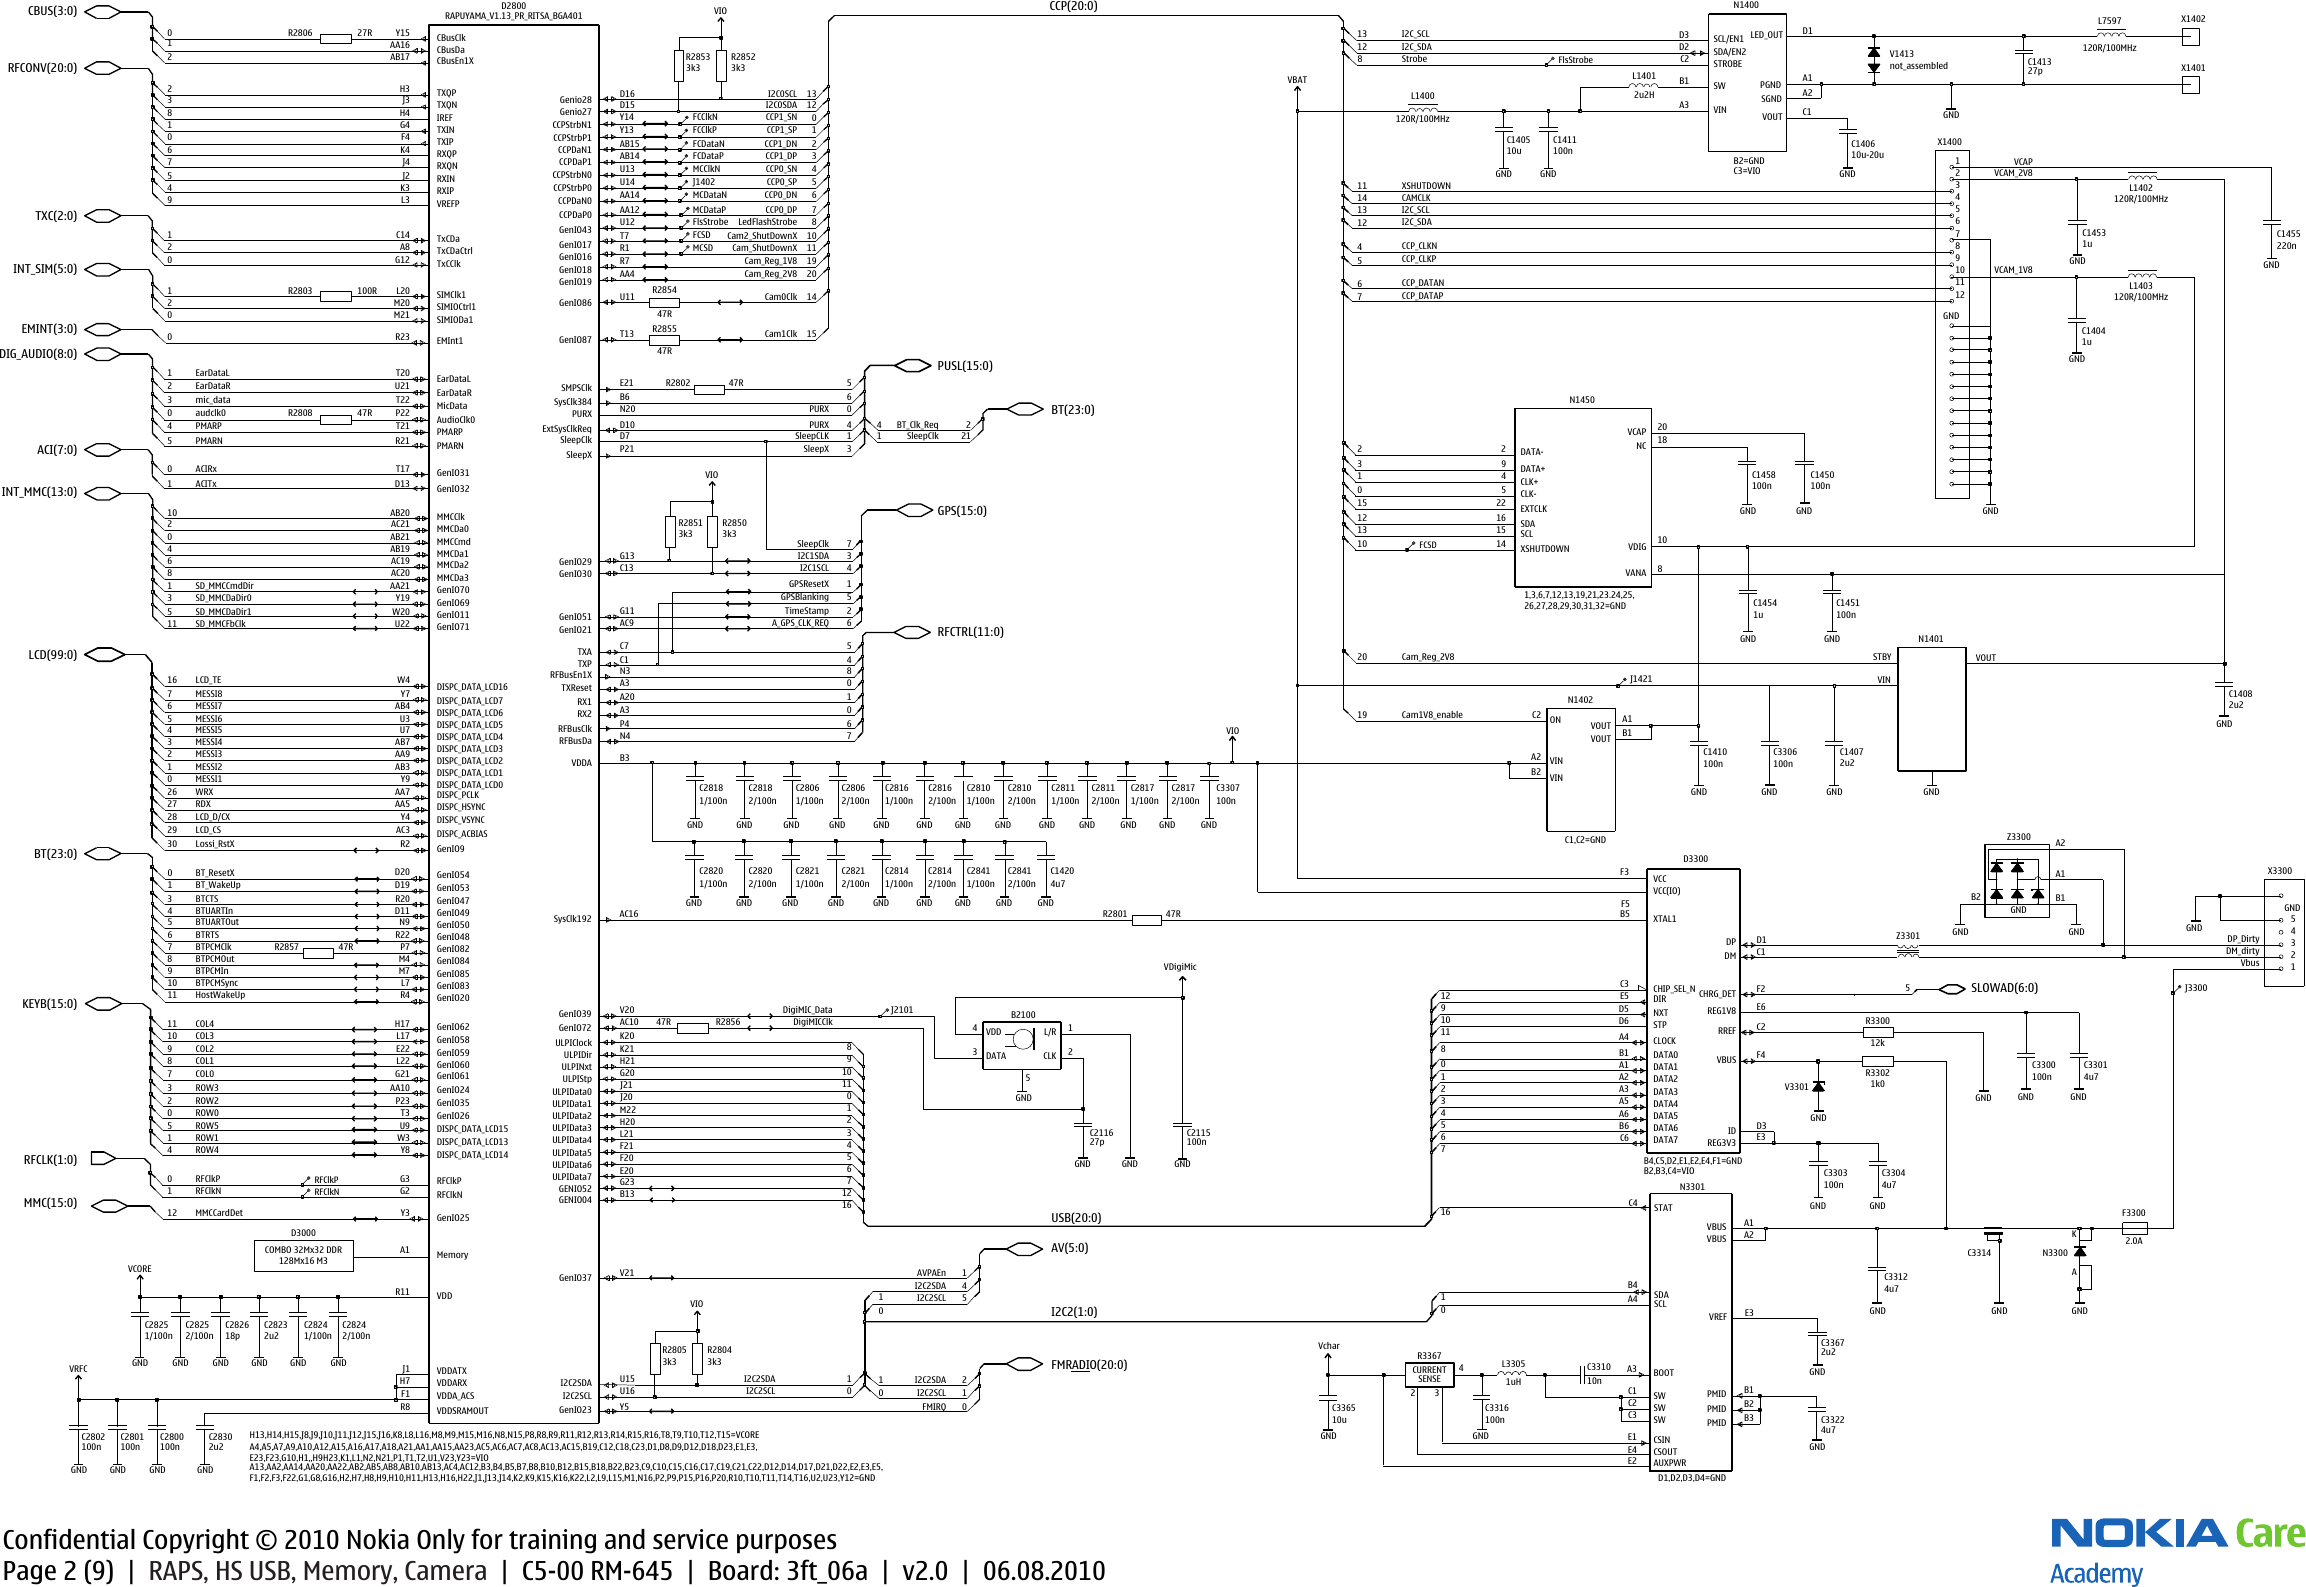 Page 2 of 10 - Nokia C5-00 RM-645 - Service Schematics. Www.s-manuals.com. Schematics V2.0